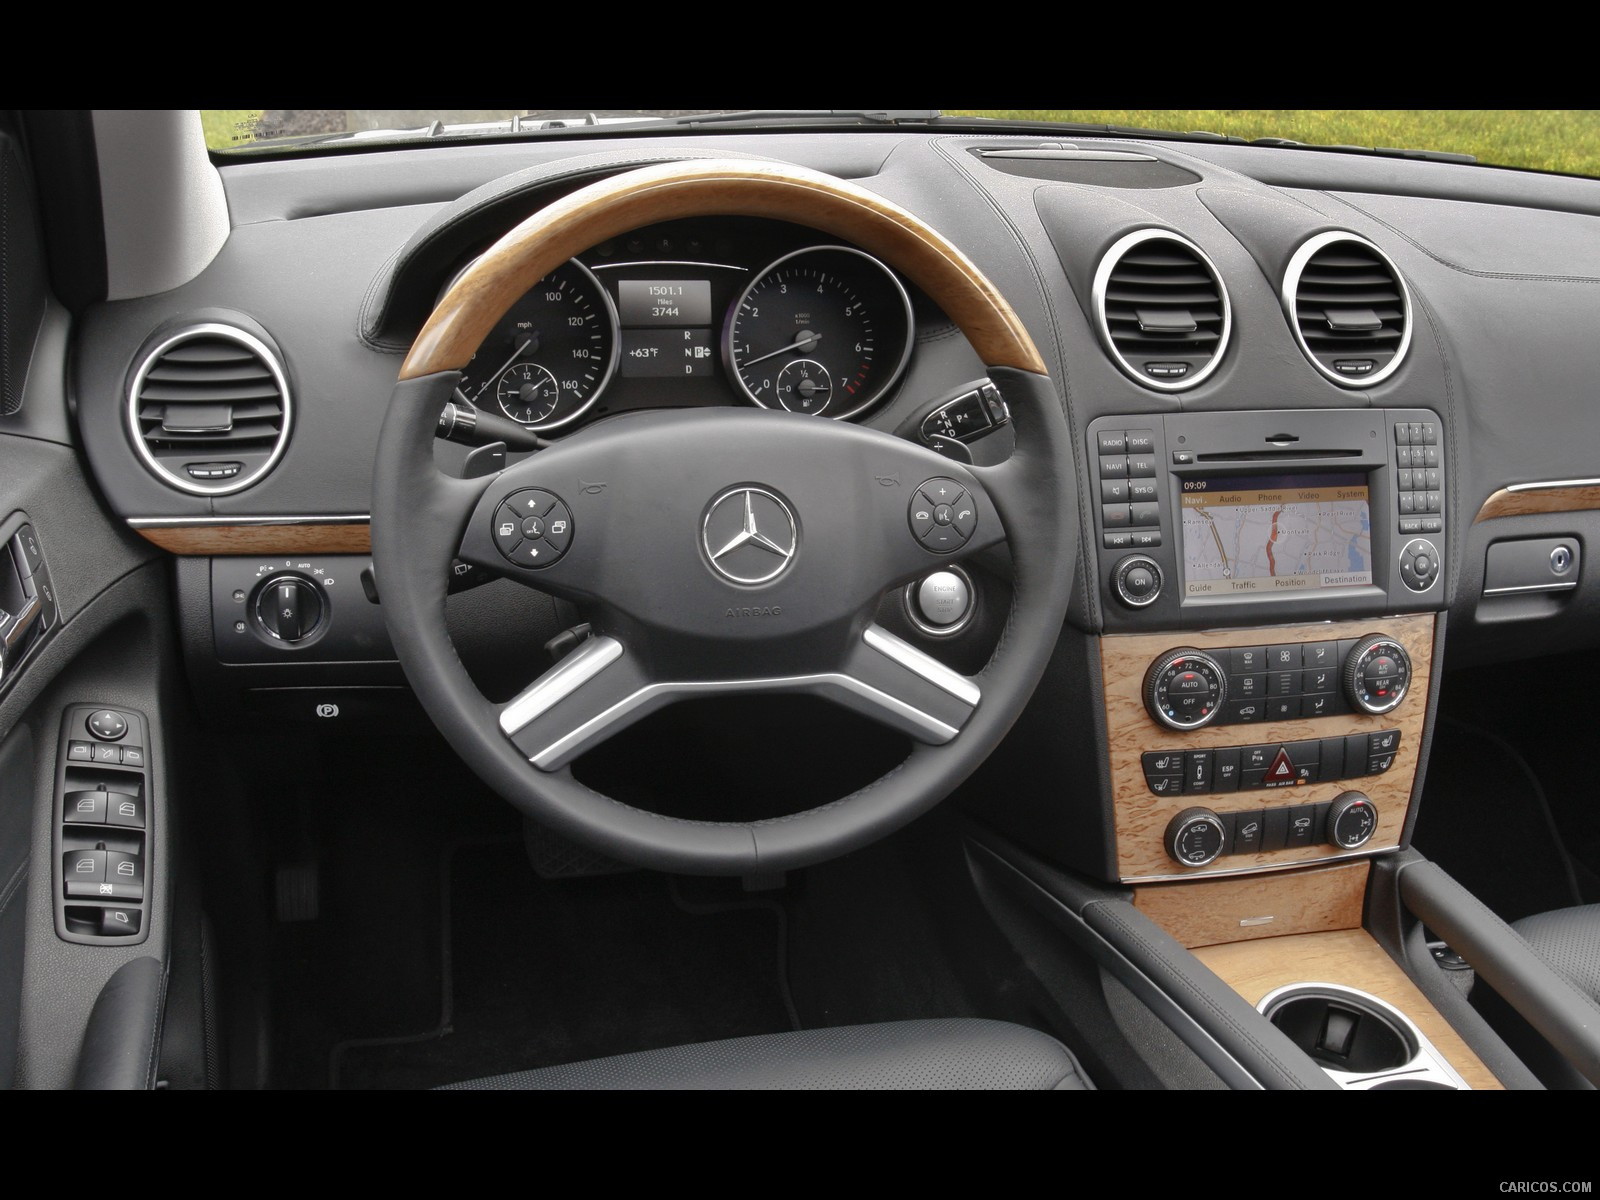 2010 Mercedes Benz Gl550 Interior Wallpaper 63